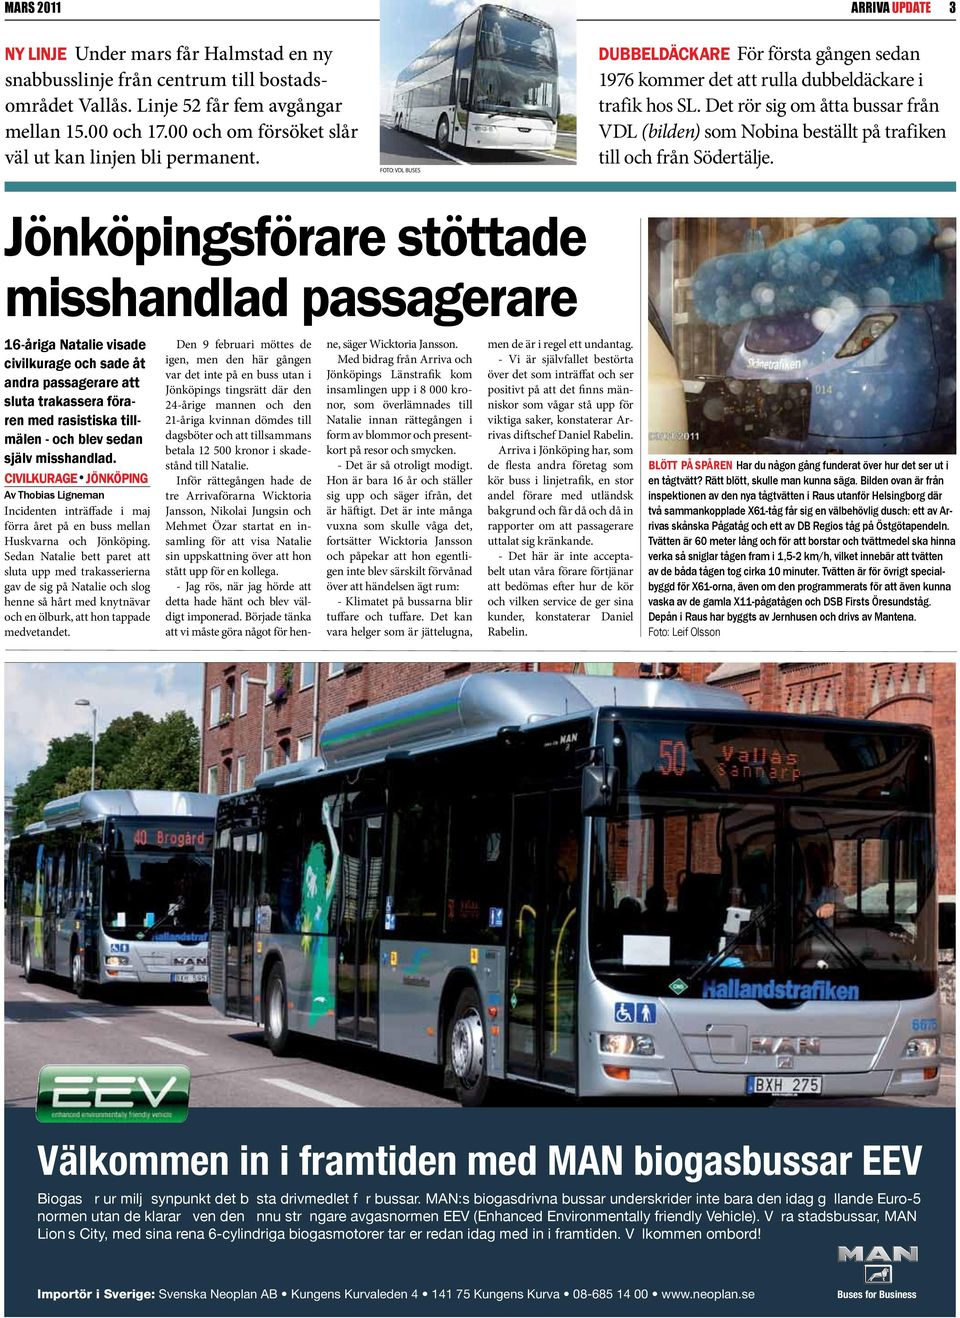 Det rör sig om åtta bussar från VDL (bilden) som Nobina beställt på trafiken till och från Södertälje.